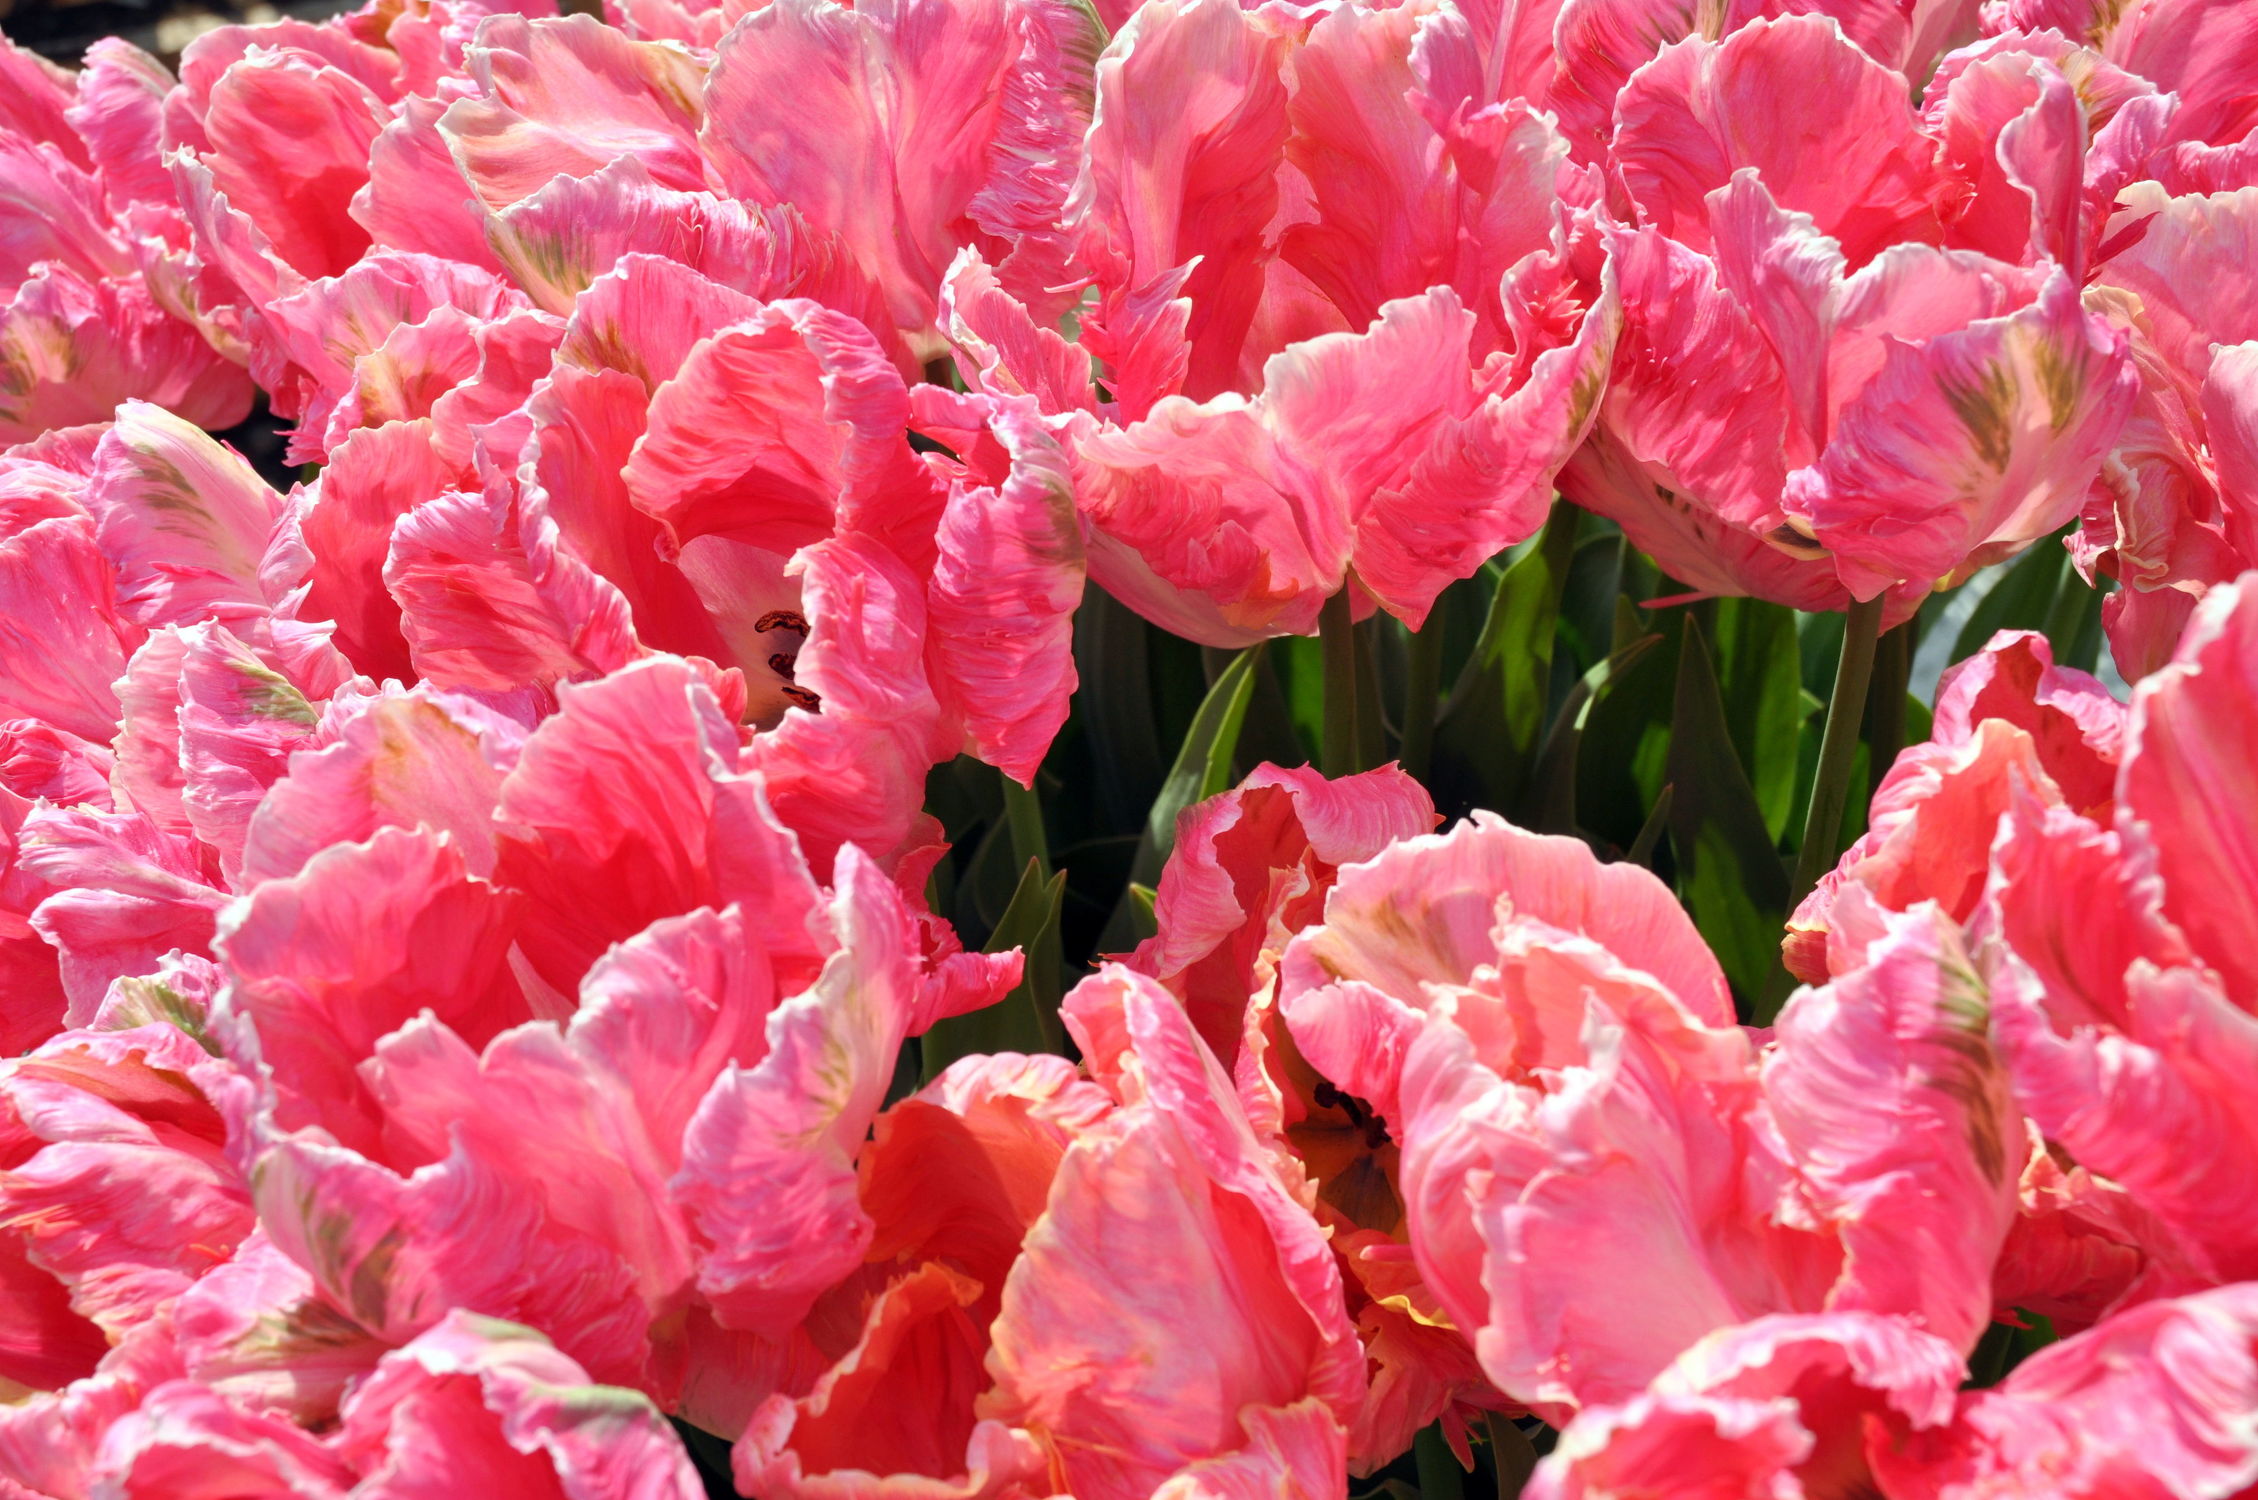 Bild mit Rosa, Frühling, Tulpe, Tulips, Tulpen, Tulip, intensiv, farbenfroh, leuchtend, tulpenpracht, tulpenbeet, frühblüher, frühjahr, pink